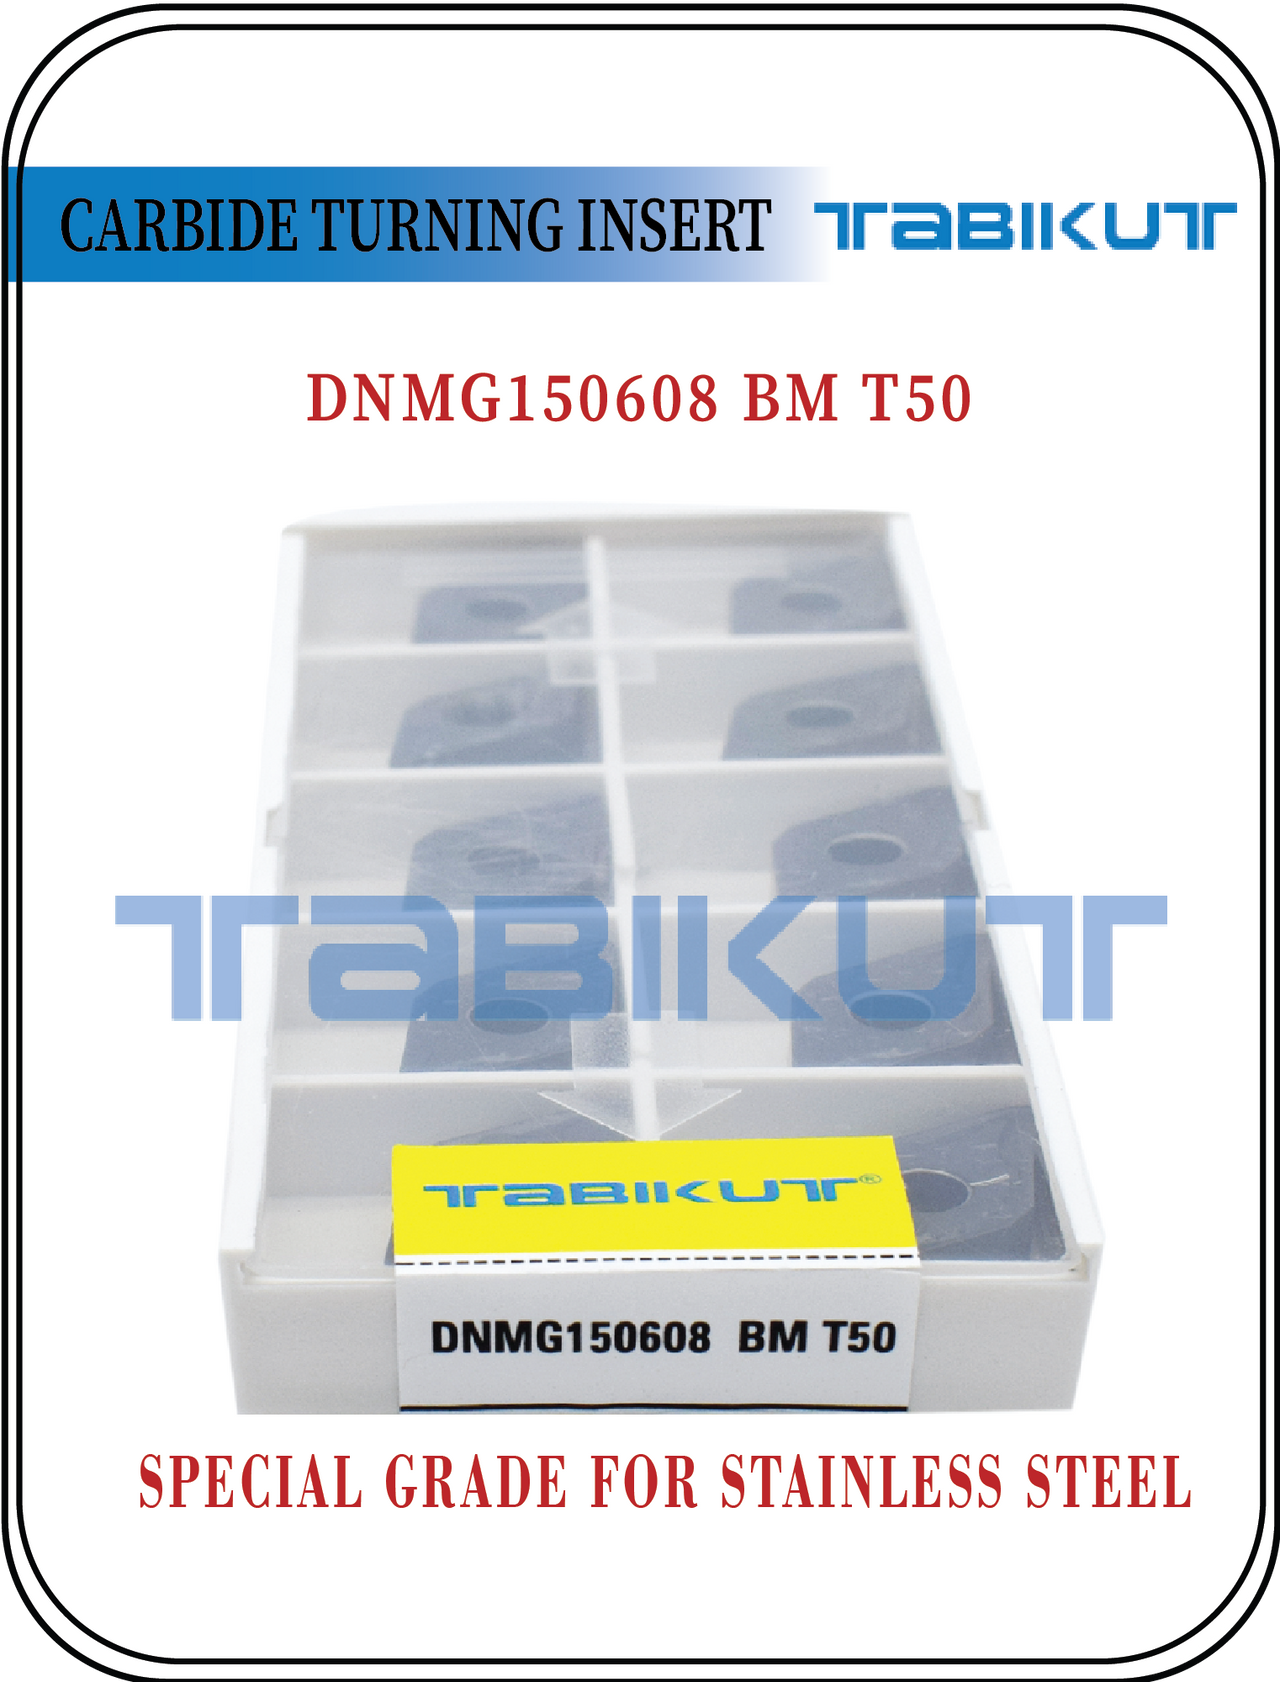 DNMG150604/08/12 BM T50 Stainless steel grade tabikut pack of 10